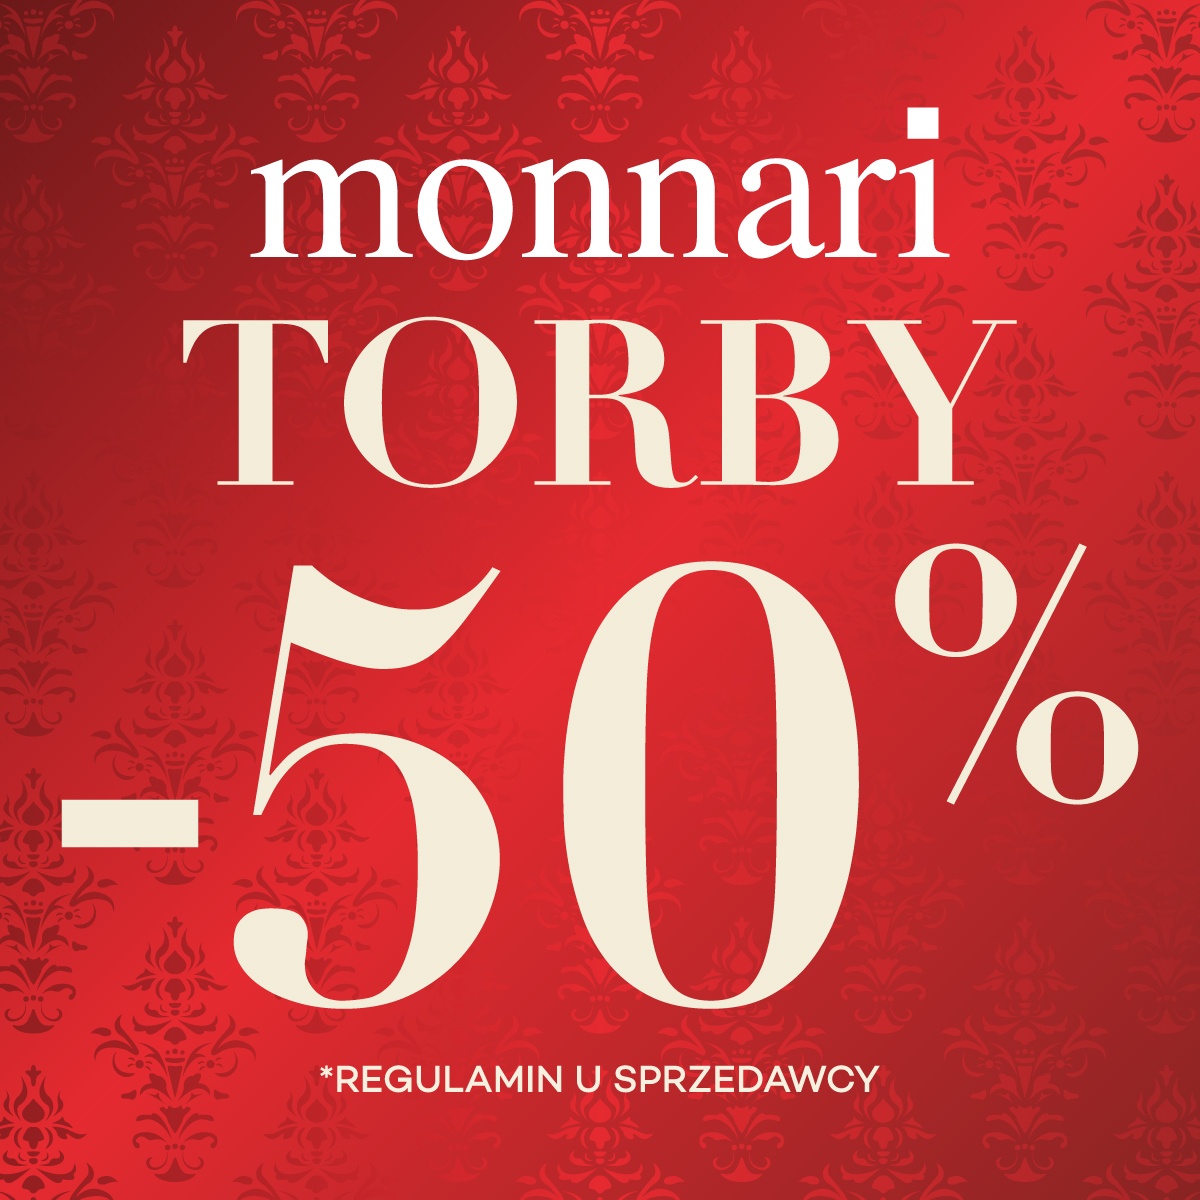 Torby w Monnari -50%!